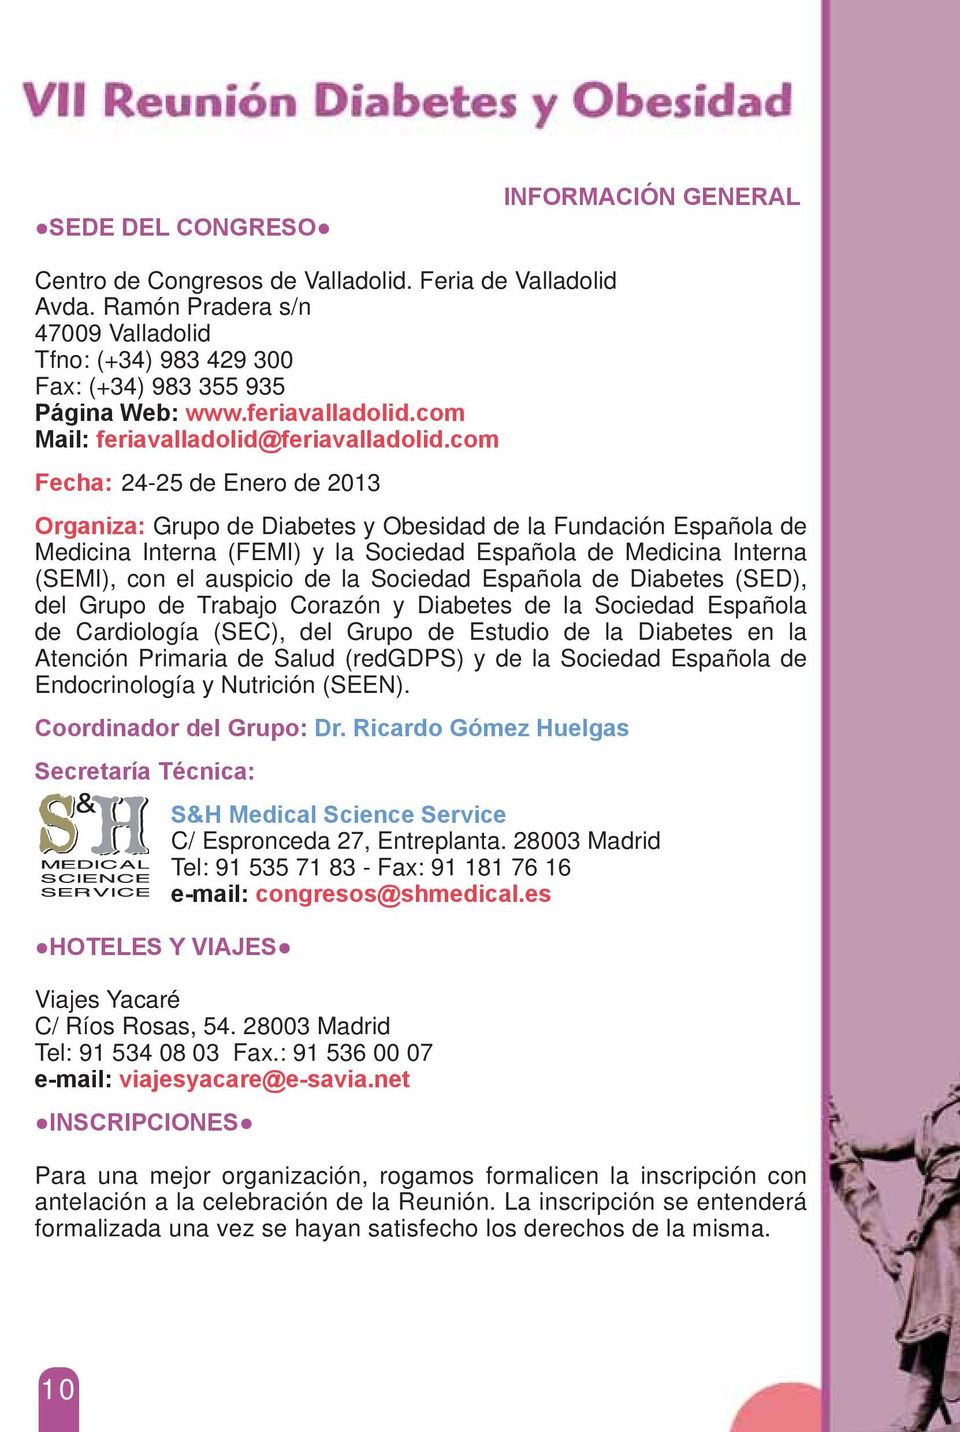 com Fecha: 24-25 de Enero de 2013 Organiza: Grupo de Diabetes y Obesidad de la Fundación Española de Medicina Interna (FEMI) y la Sociedad Española de Medicina Interna (SEMI), con el auspicio de la